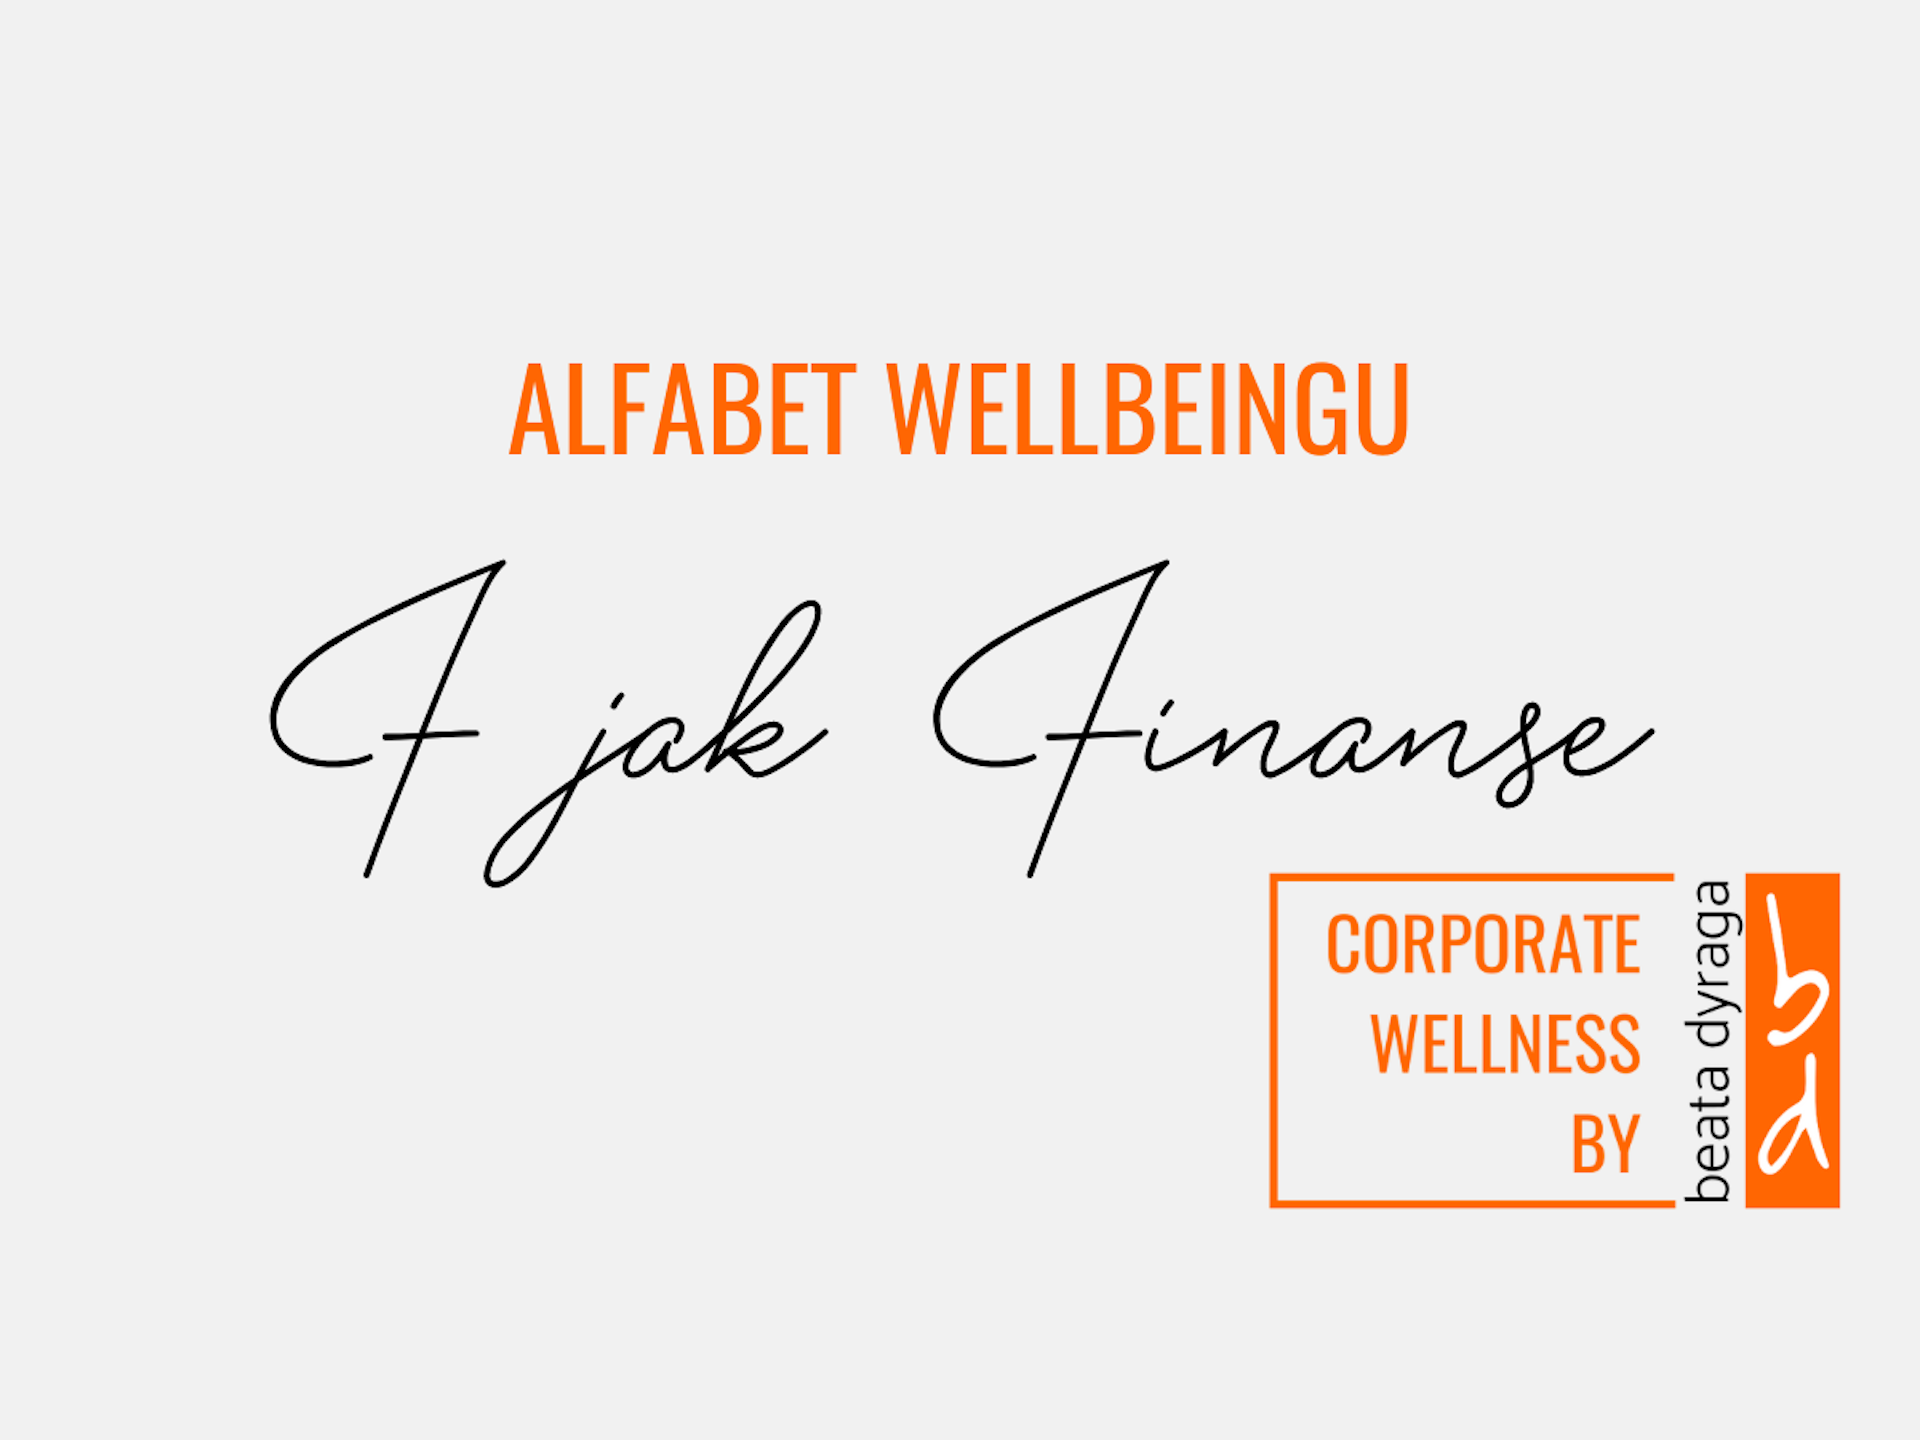 Baner z napisem Alfabet Wellbeingu F jak Finanse, dotyczący wellbeingu finansowego